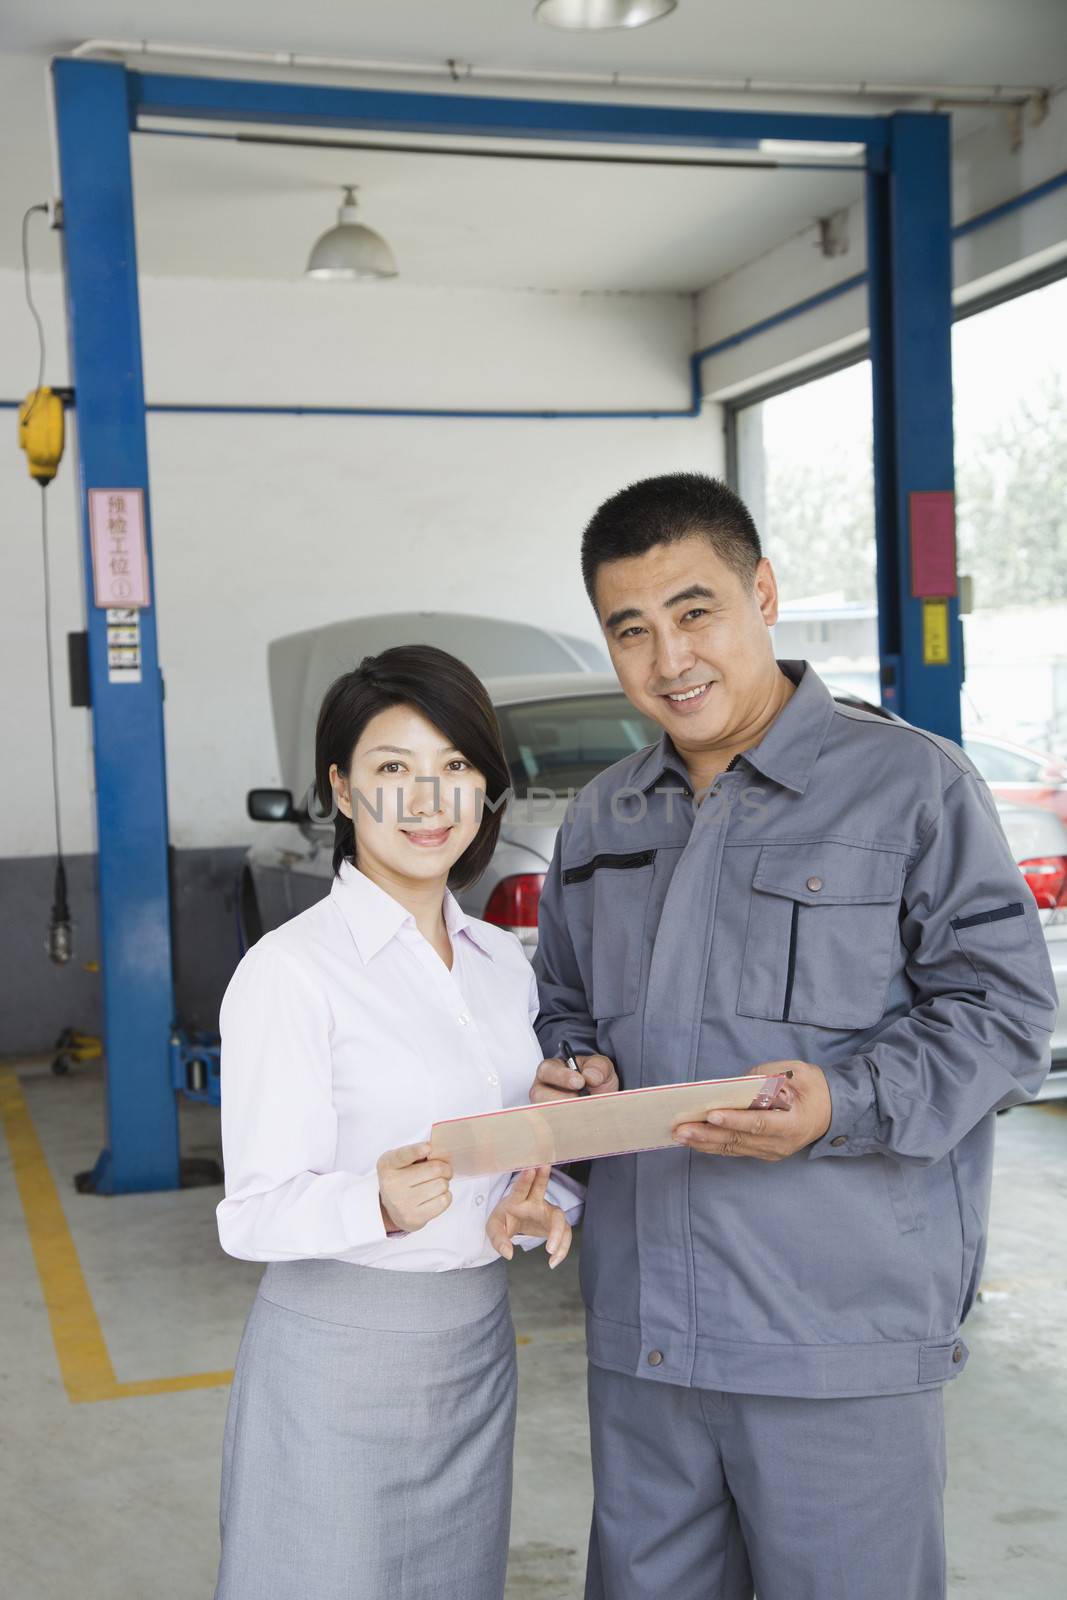 Garage Mechanic Explaining to Customer by XiXinXing